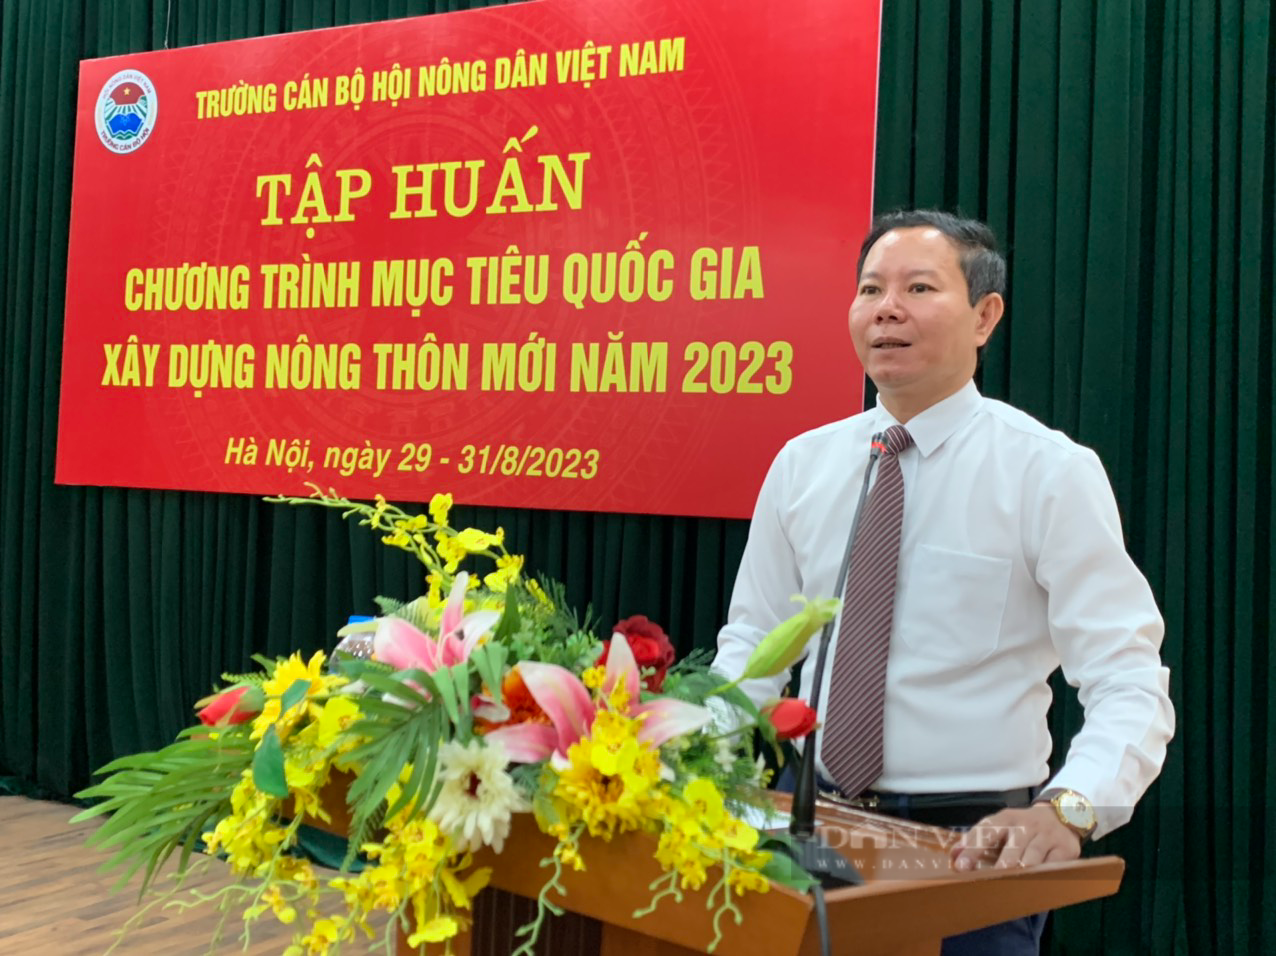 Trung ương Hội Nông dân Việt Nam tổ chức tập huấn Chương trình mục tiêu Quốc gia xây dựng nông thôn mới - Ảnh 4.